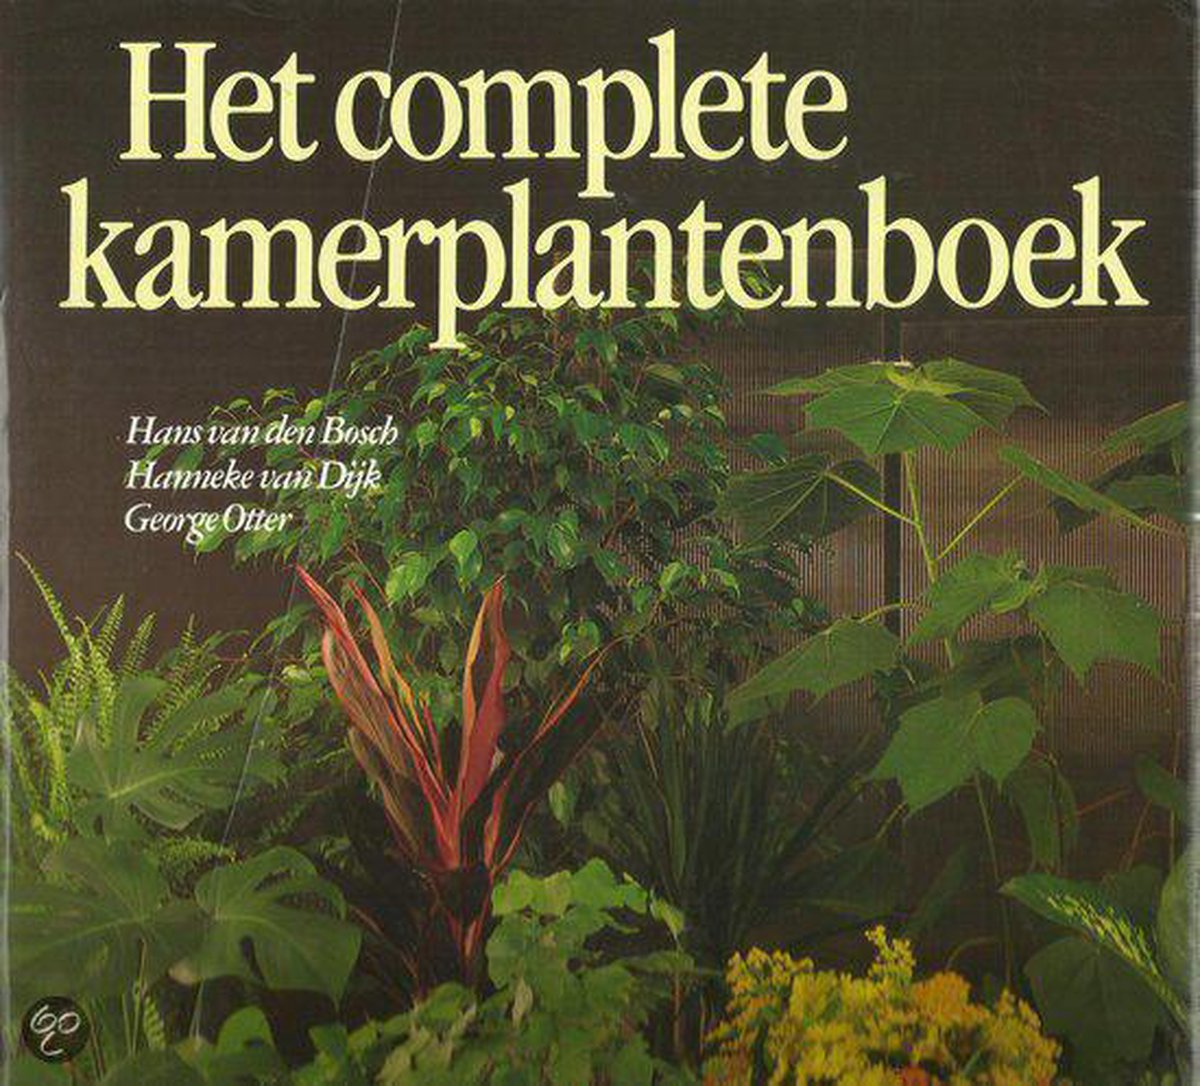 Het complete kamerplantenboek